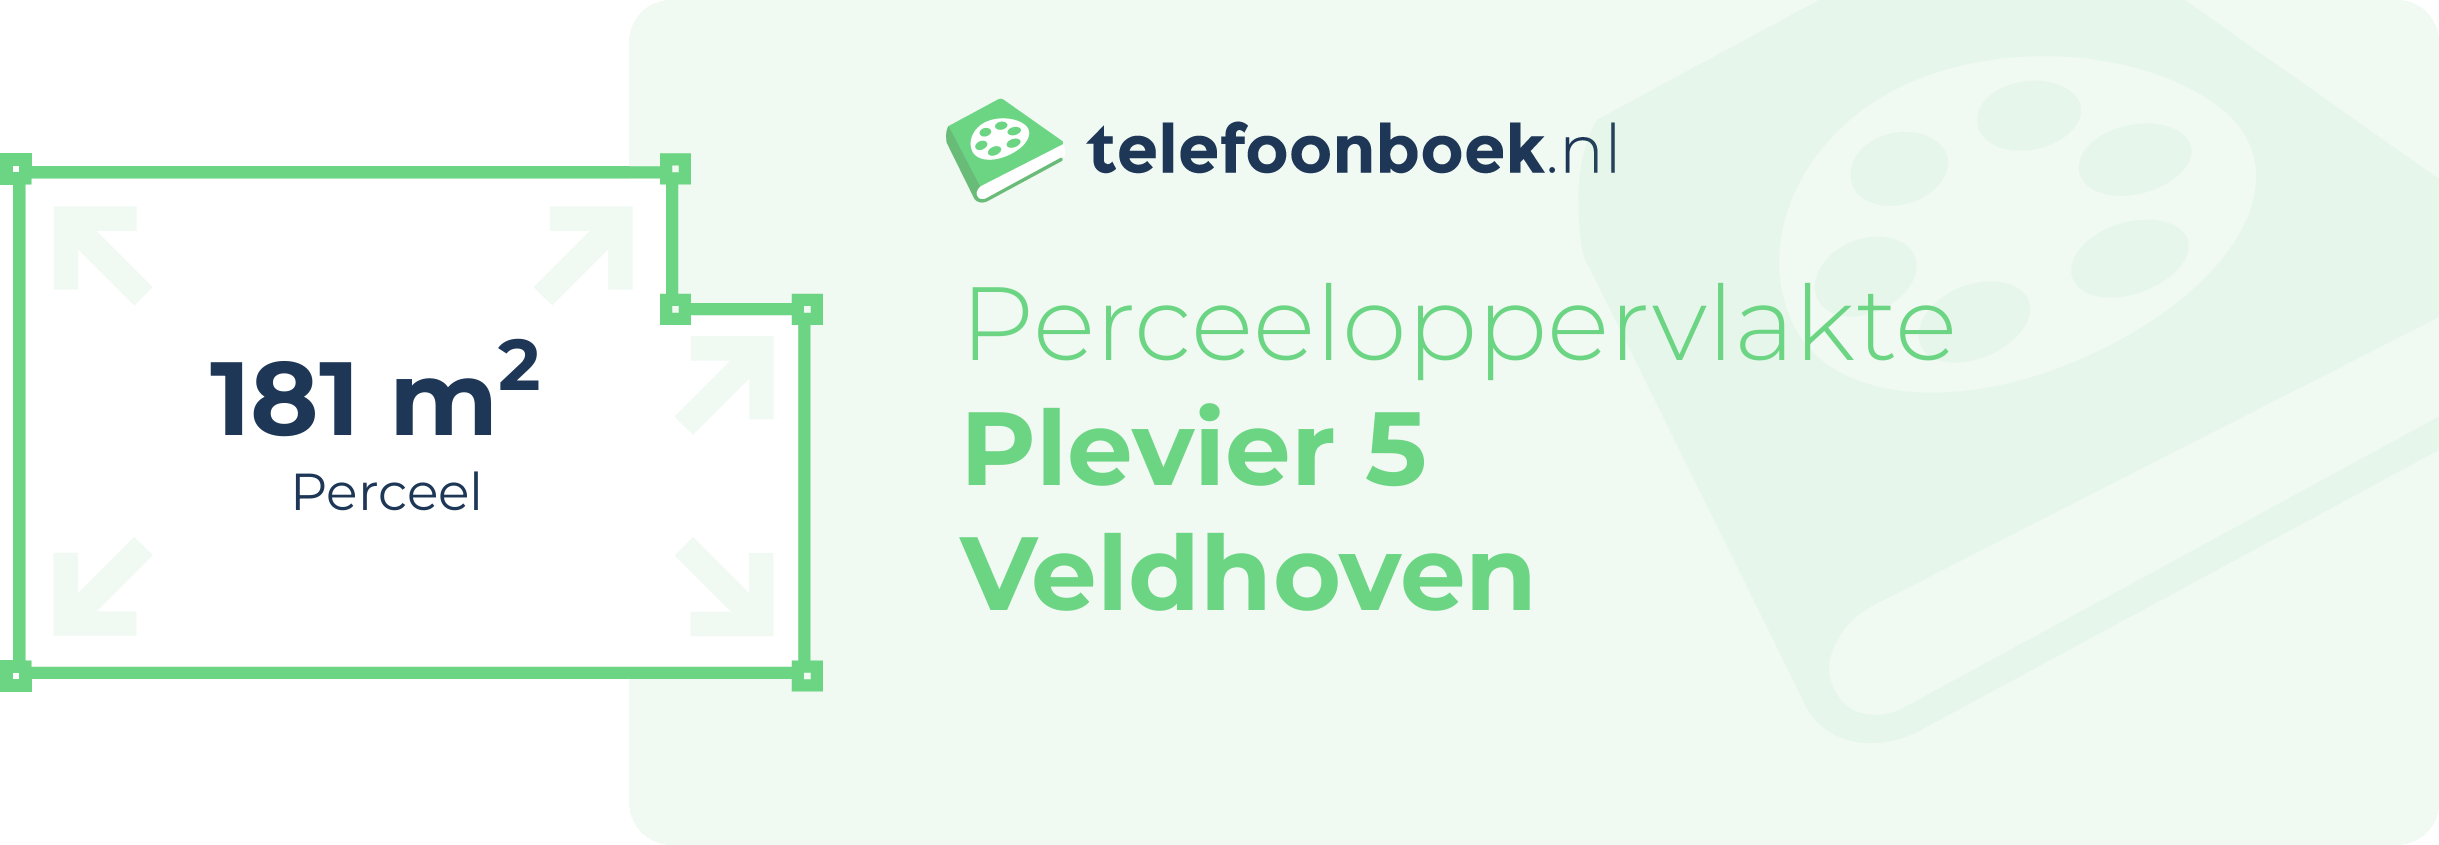 Perceeloppervlakte Plevier 5 Veldhoven